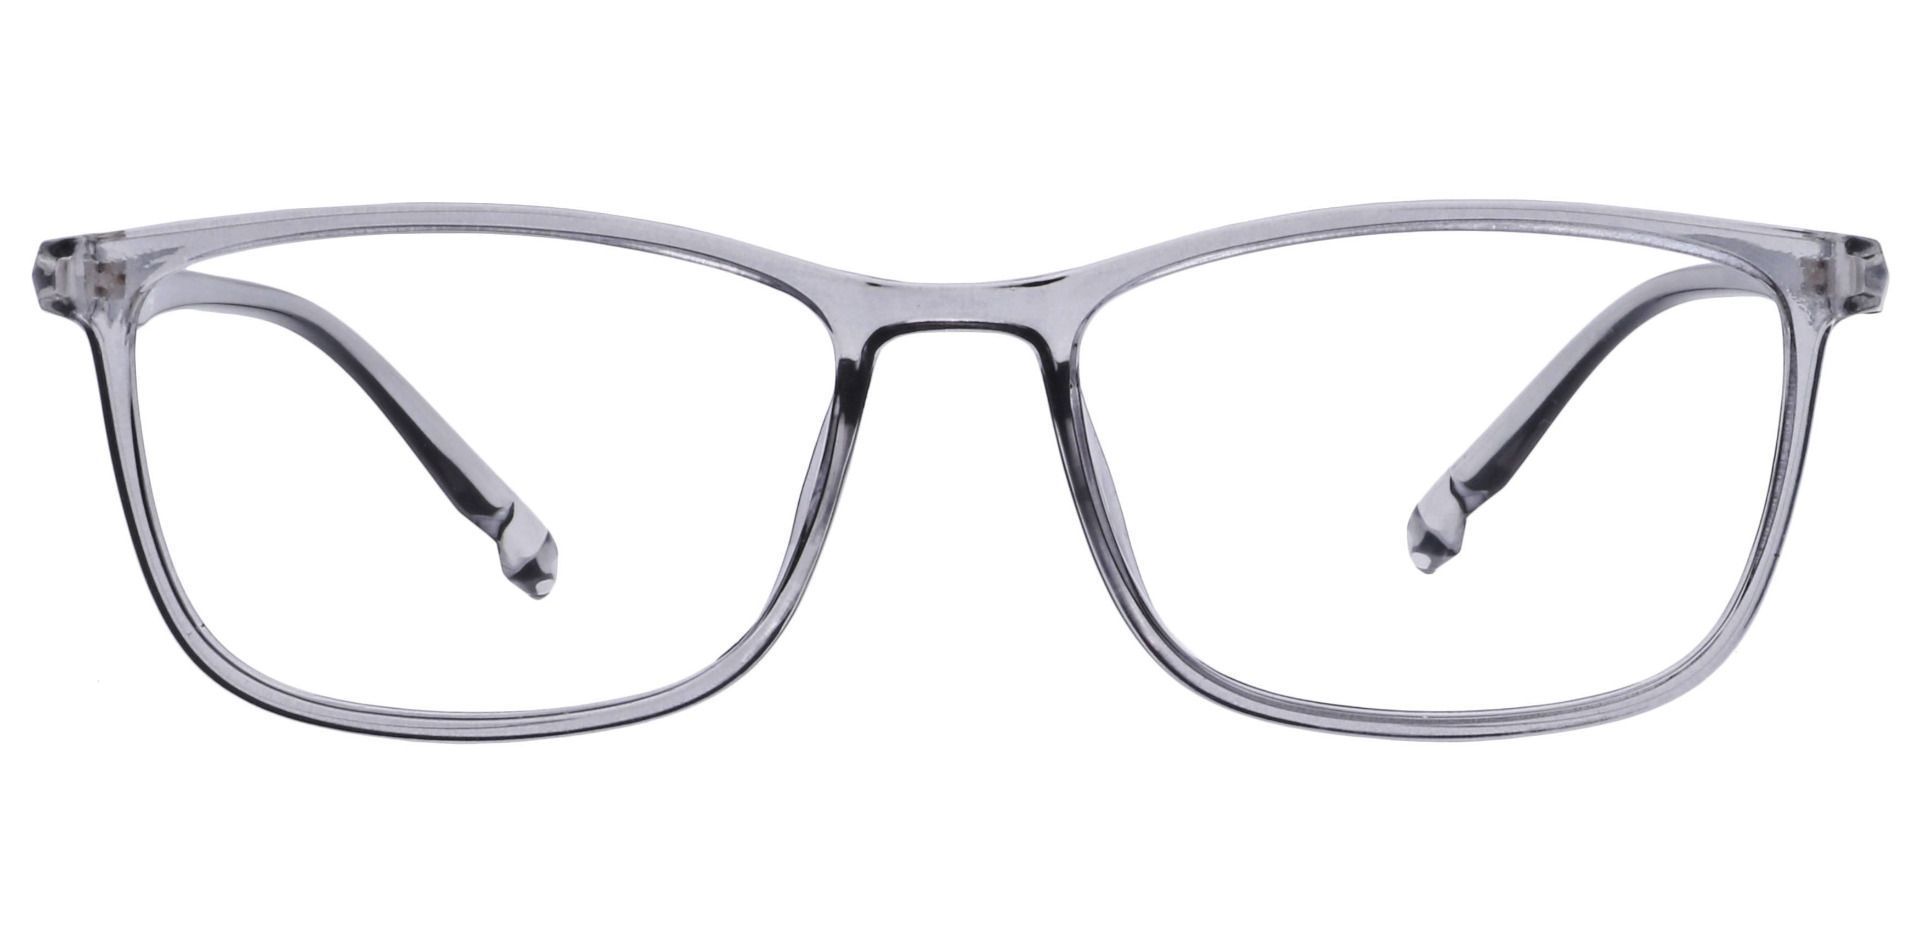 Harvest Rectangle Eyeglasses Frame - Gray